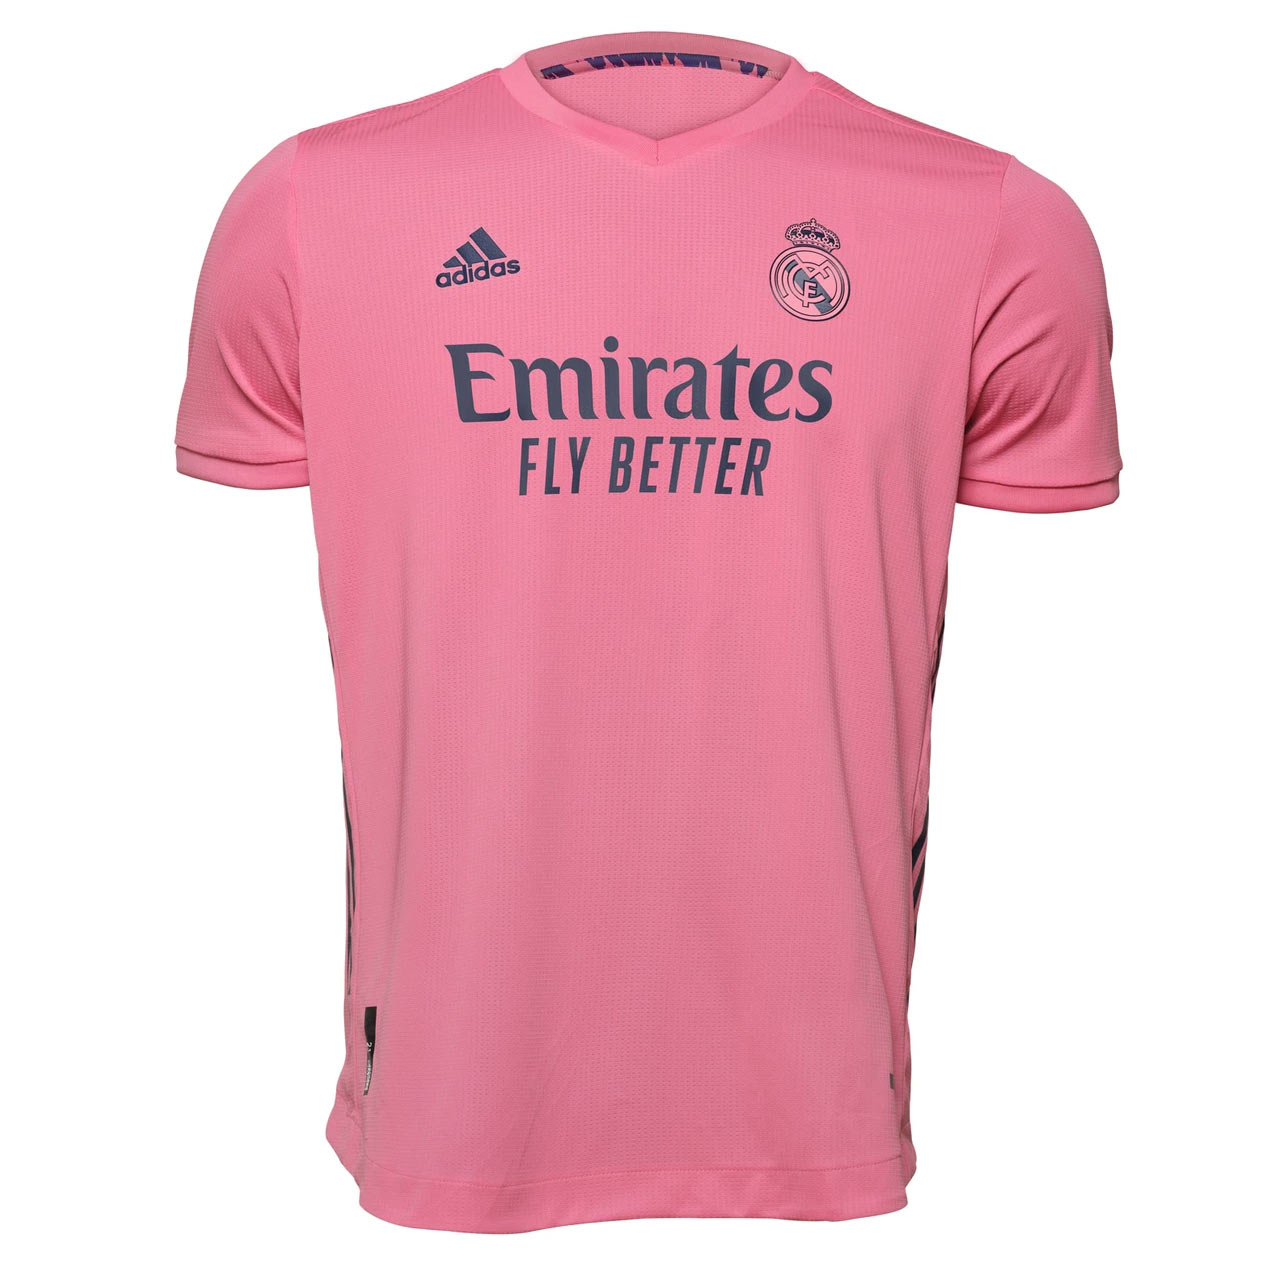 Maglia Real Madrid 2020-2021, che novità il rosa per i dettagli!